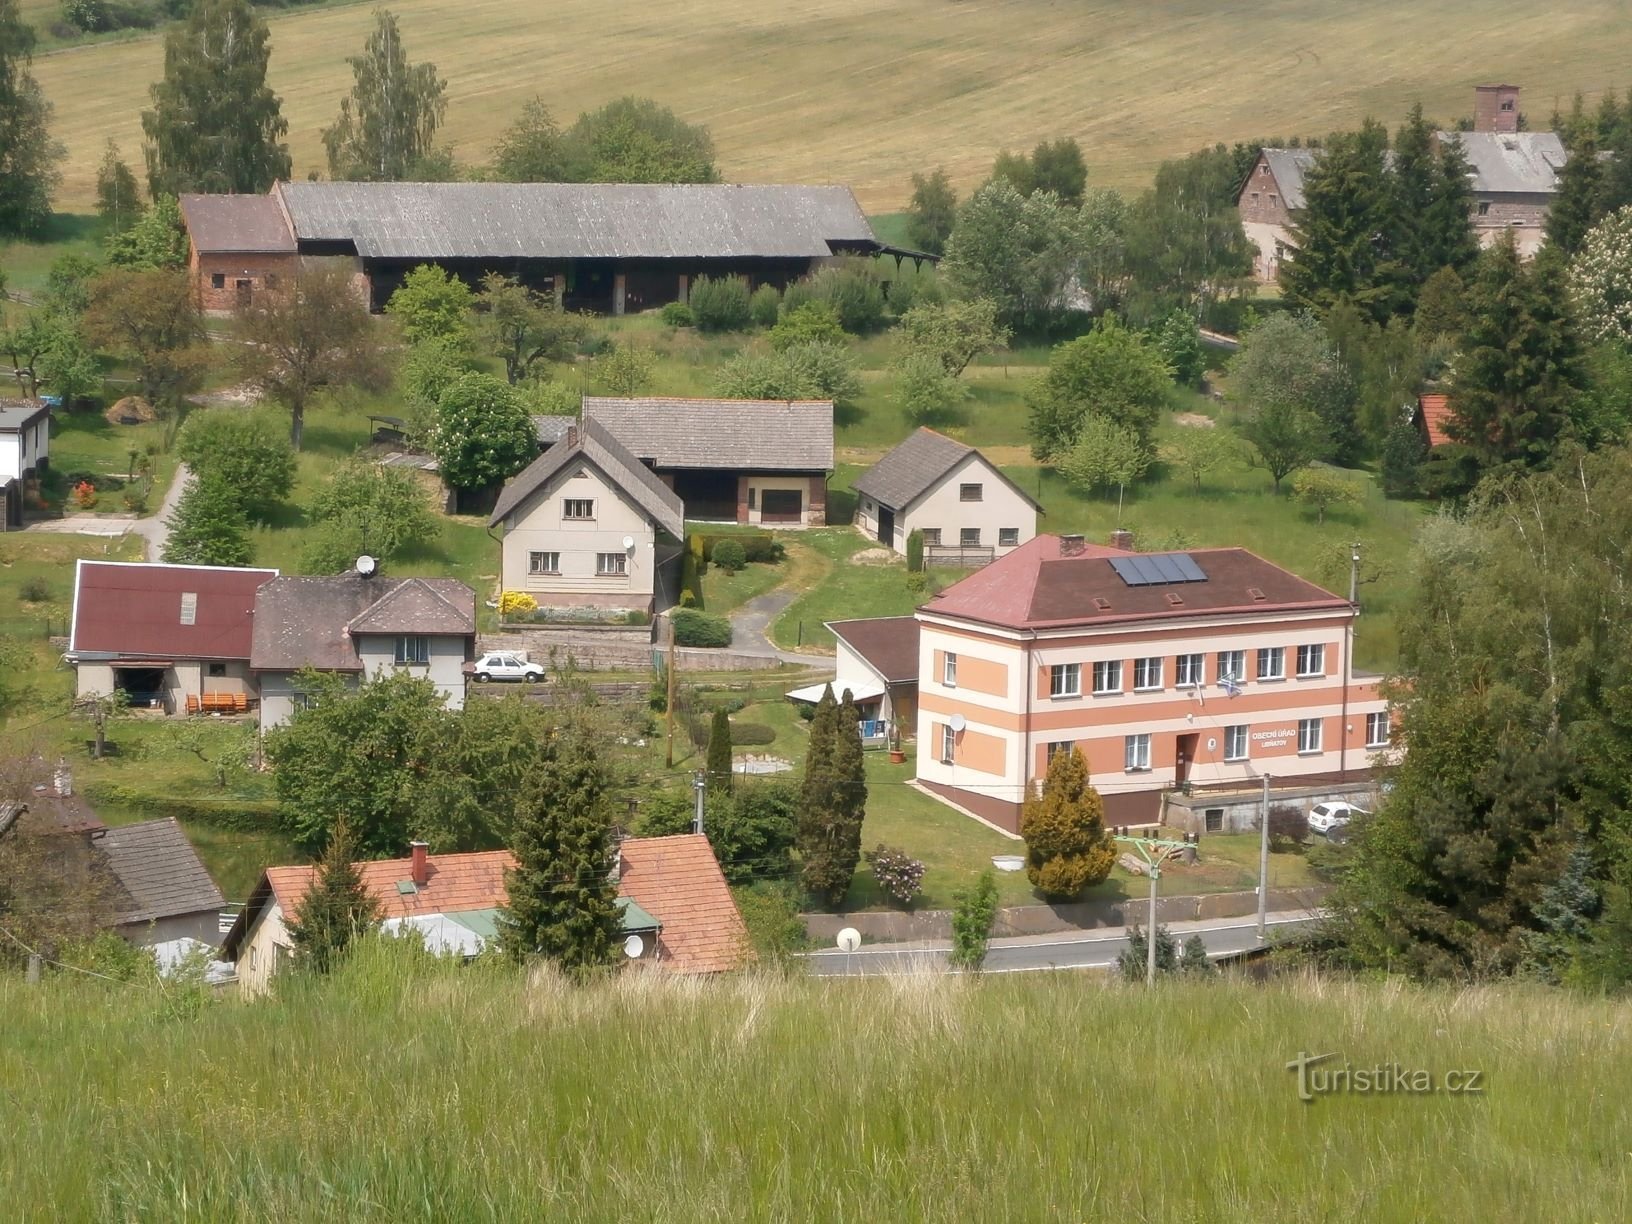 Umgebung des Gemeindeamtes (Libňatov, 25.5.2016)